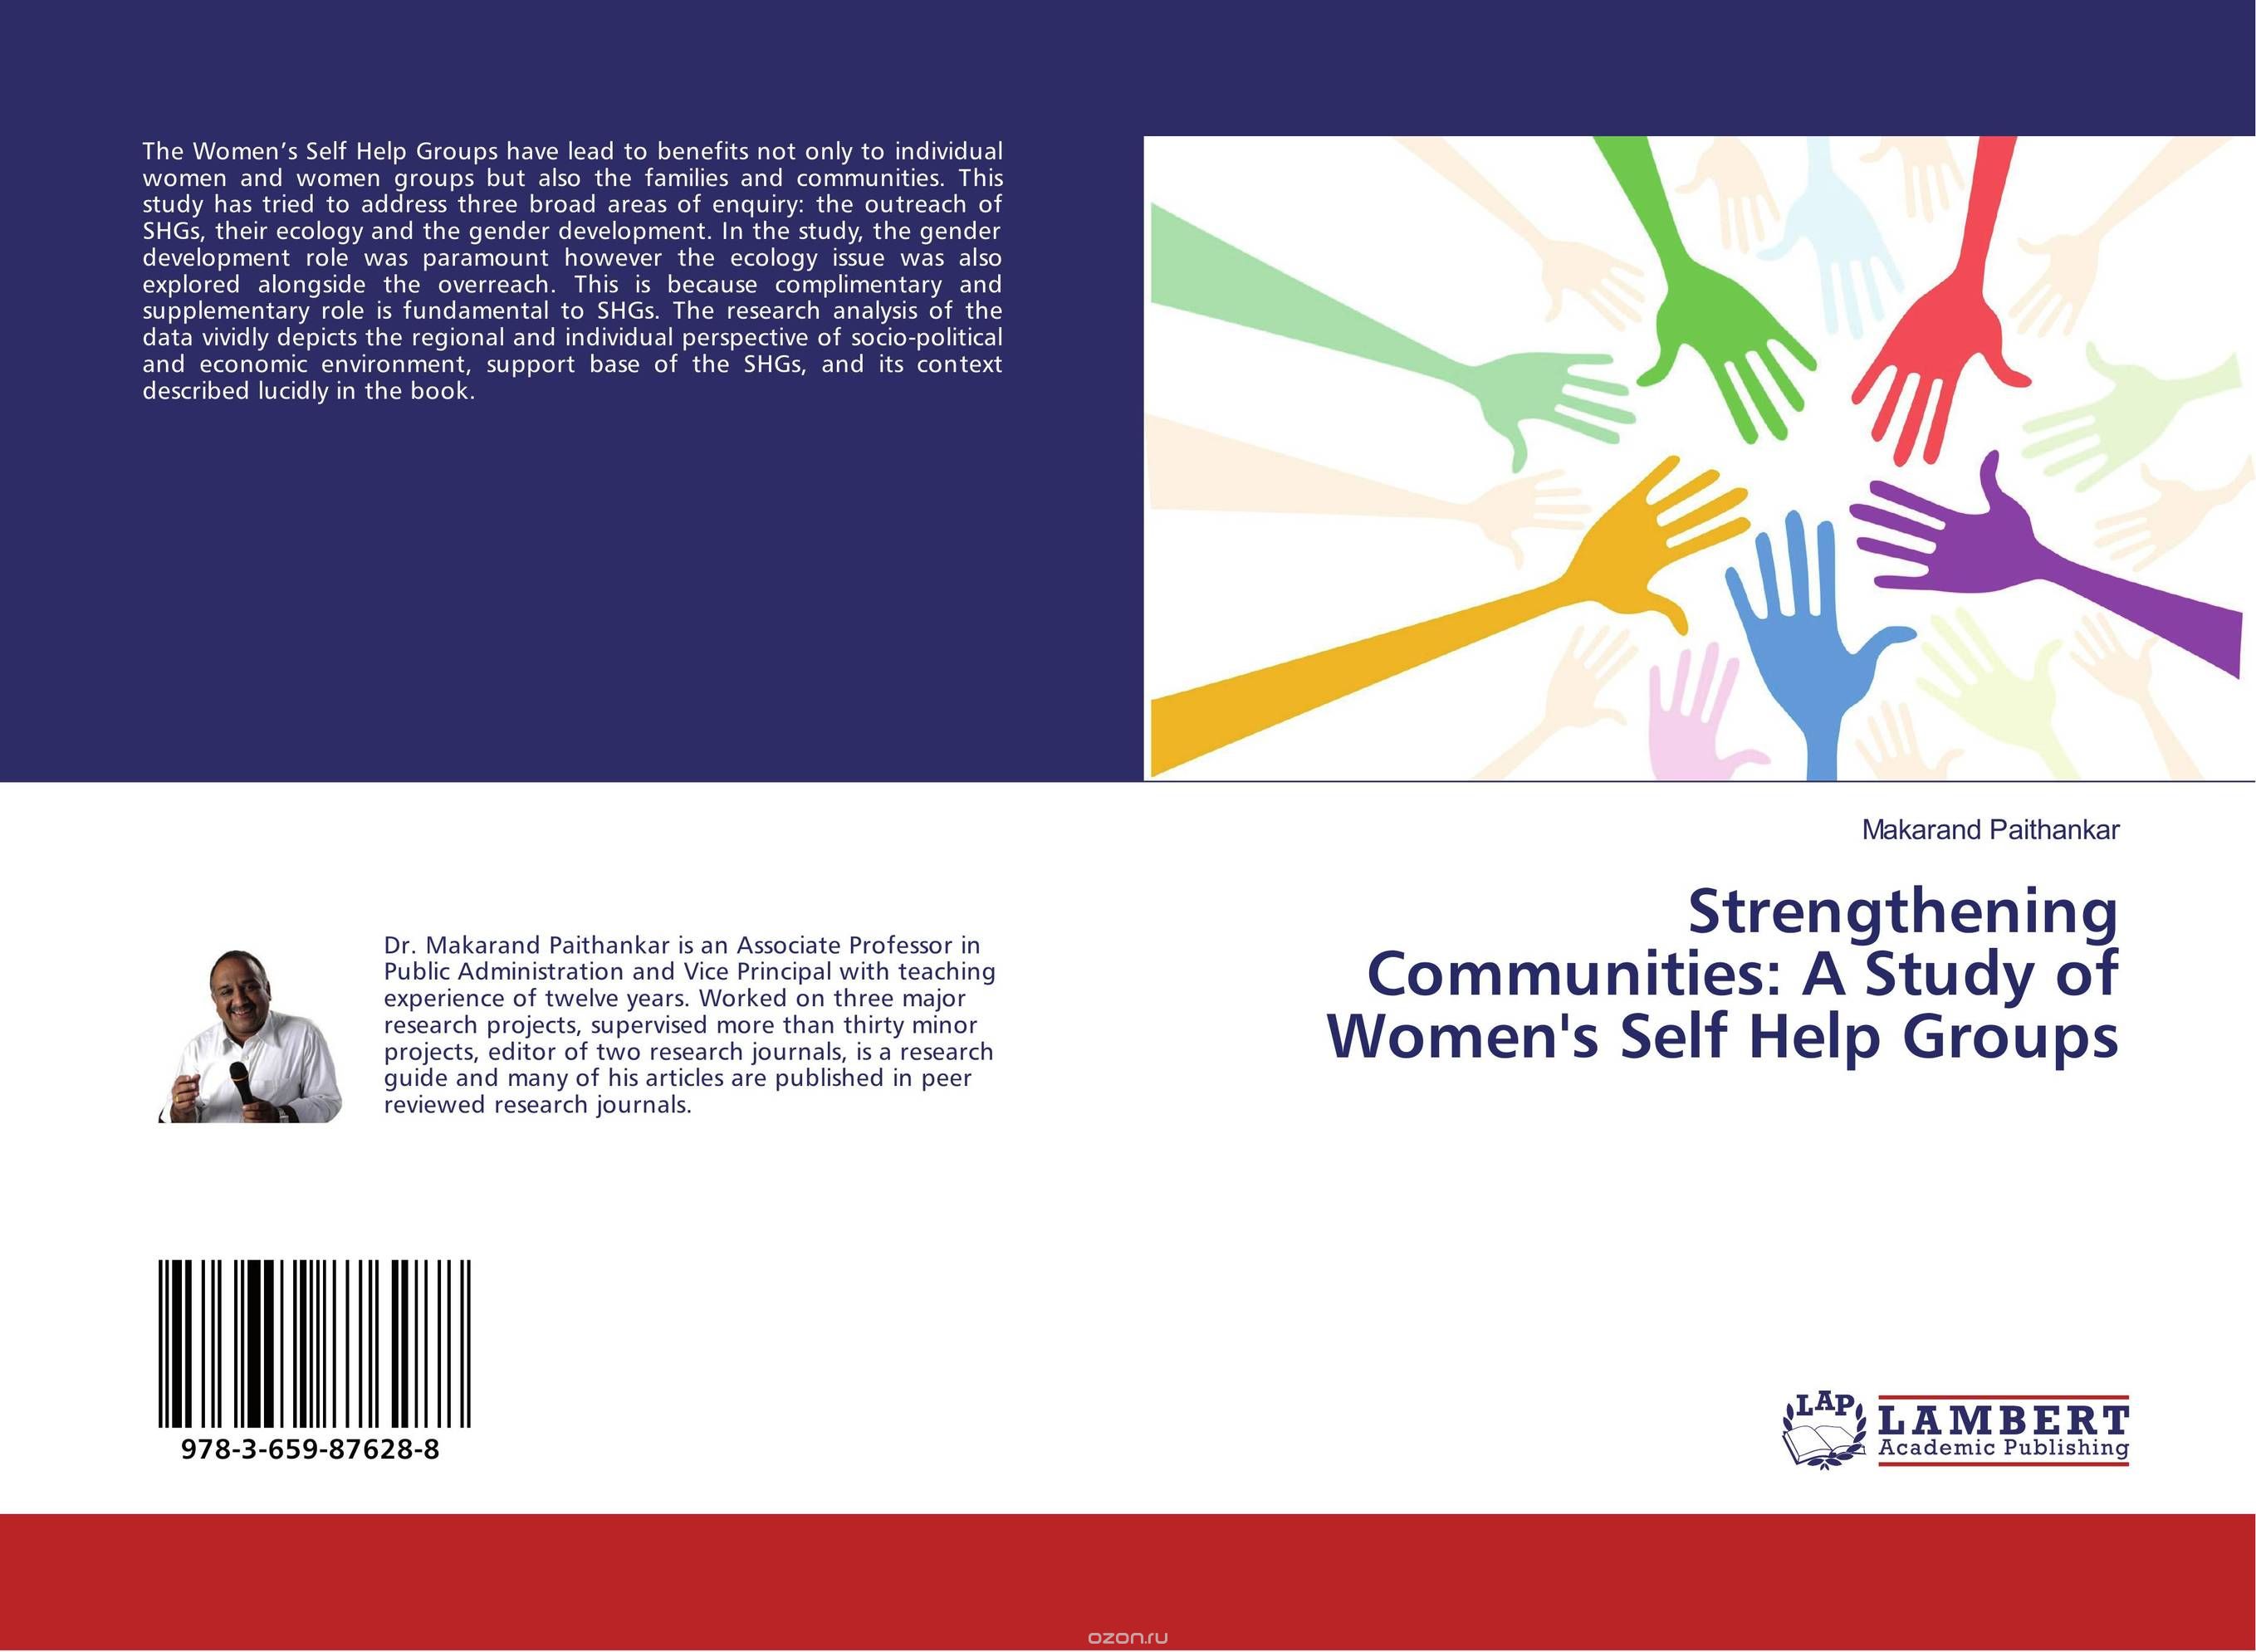 Скачать книгу "Strengthening Communities: A Study of Women's Self Help Groups"